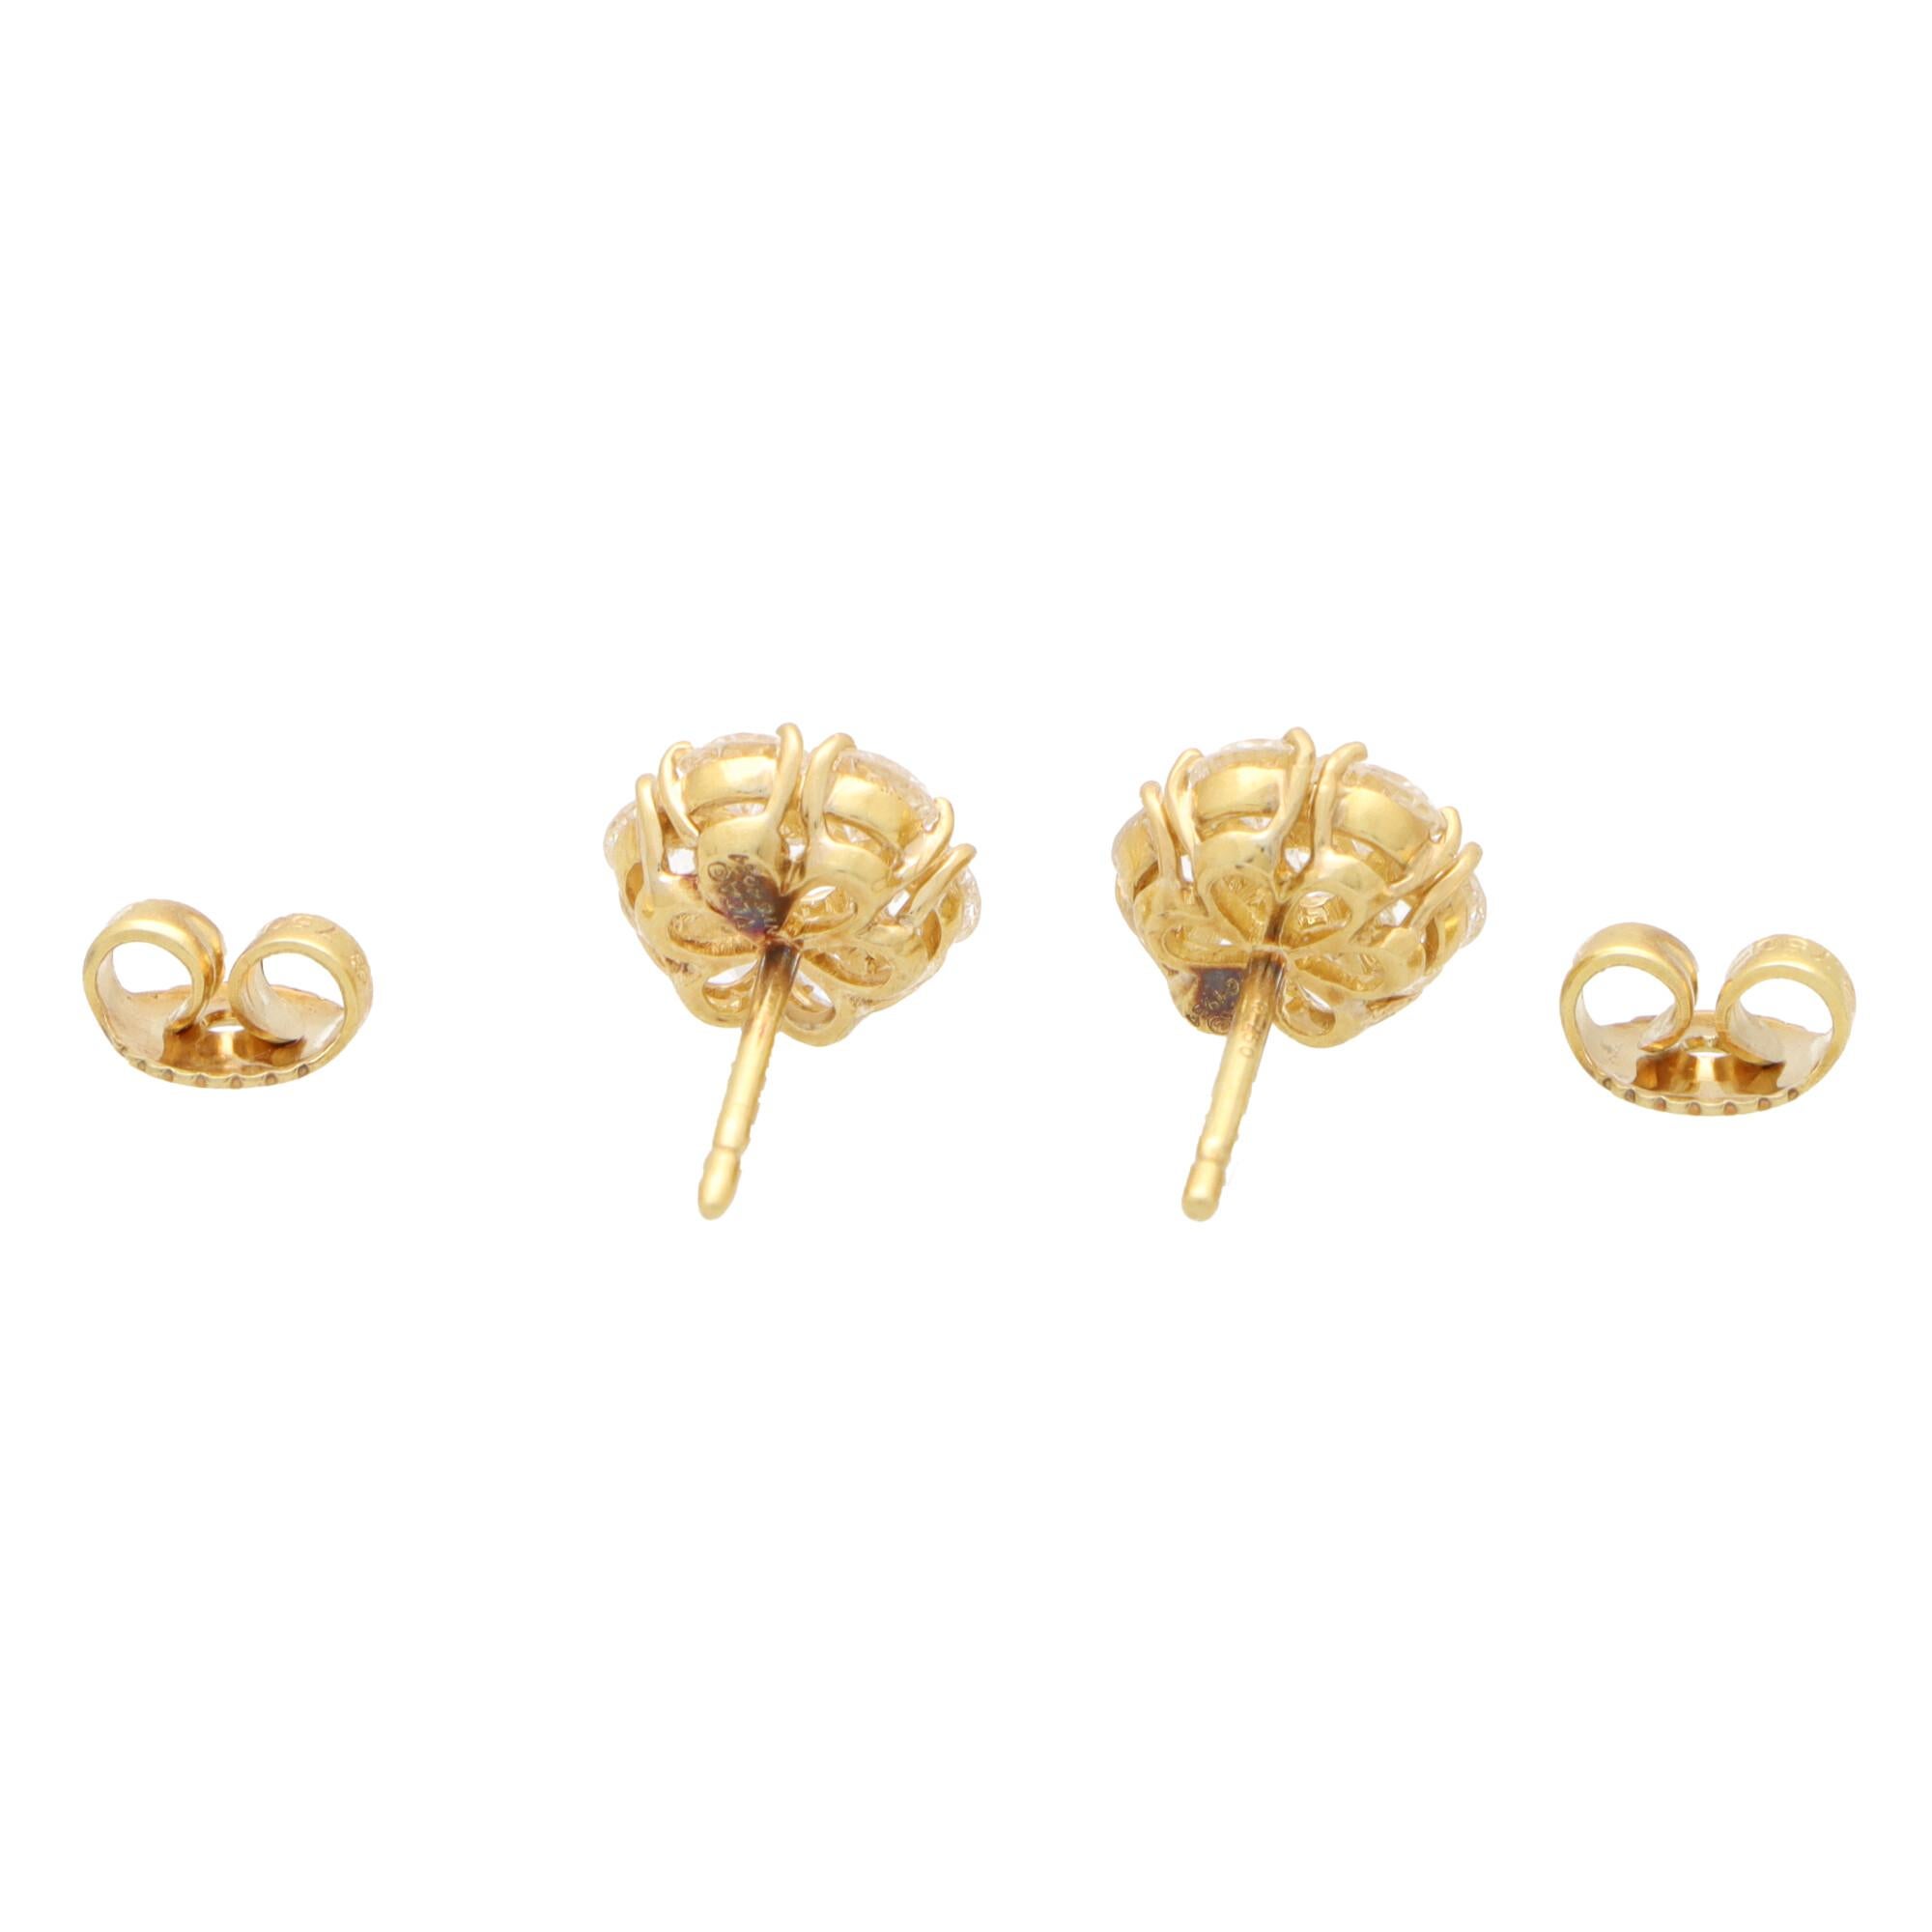 Round Cut Vintage Van Cleef & Arpels Fleurette Diamond Cluster Stud Earrings in 18k Gold